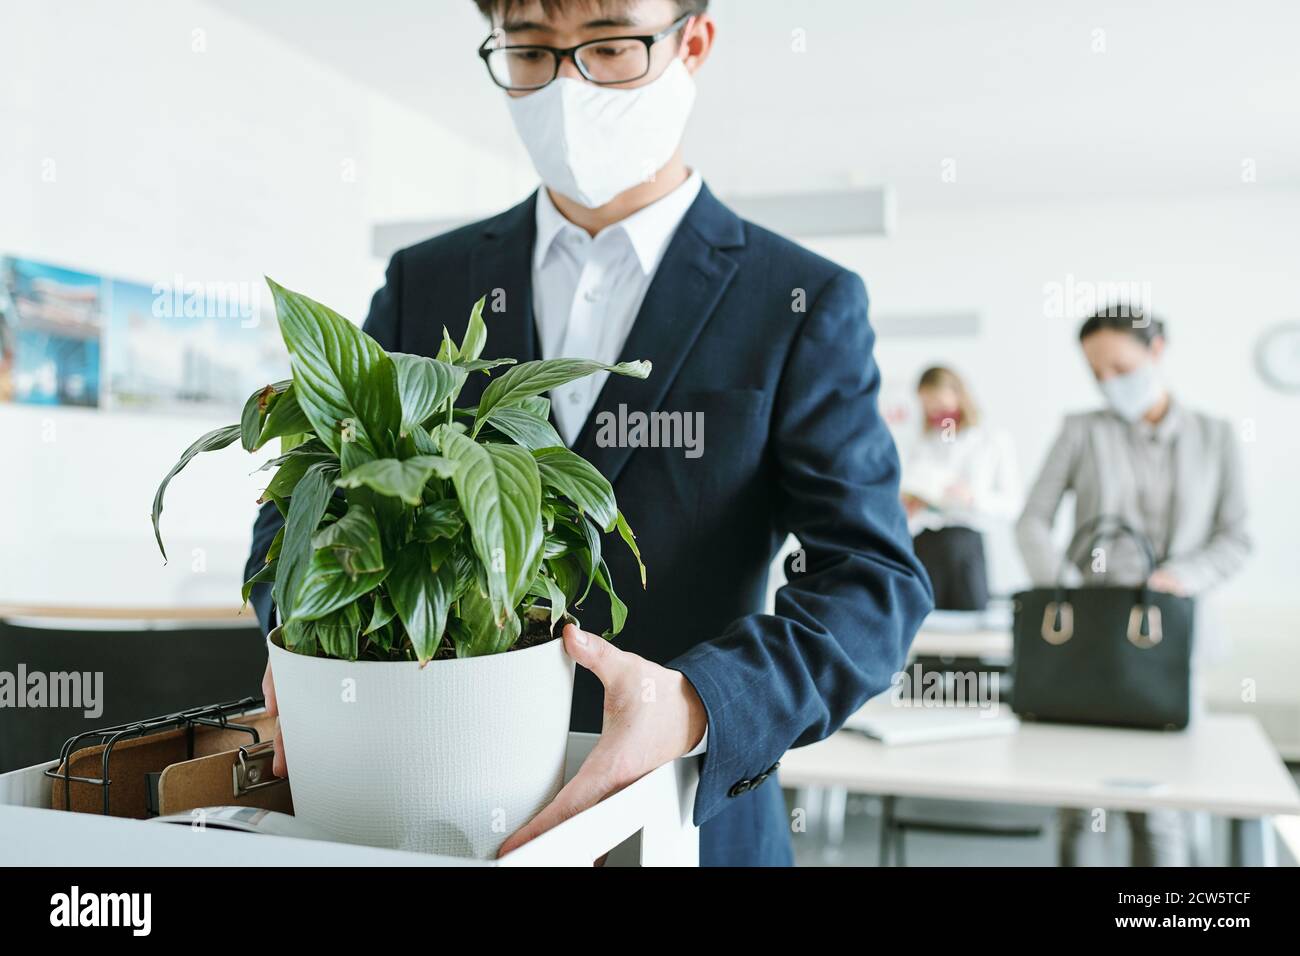 Jeune homme d'affaires asiatique en tenue de cérémonie et masque de protection à retirer pot de fleurs Banque D'Images